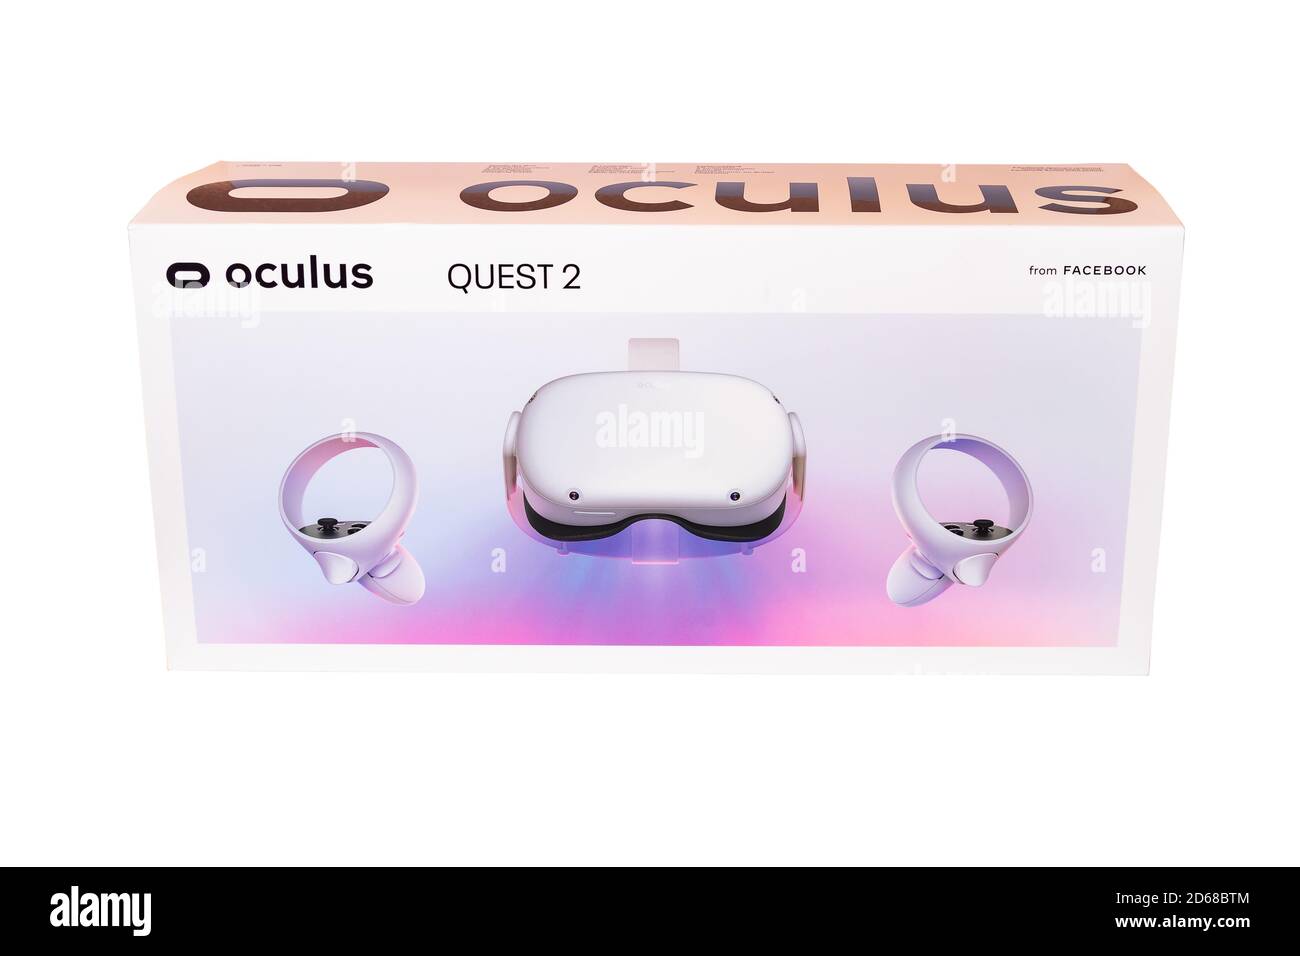 Huelva, Spagna - 14 ottobre 2020: Oculus quest 2, la nuova generazione di realtà virtuale all-in-one. Con un fattore di forma all-in-one riprogettato, il nuovo controller Touch Foto Stock